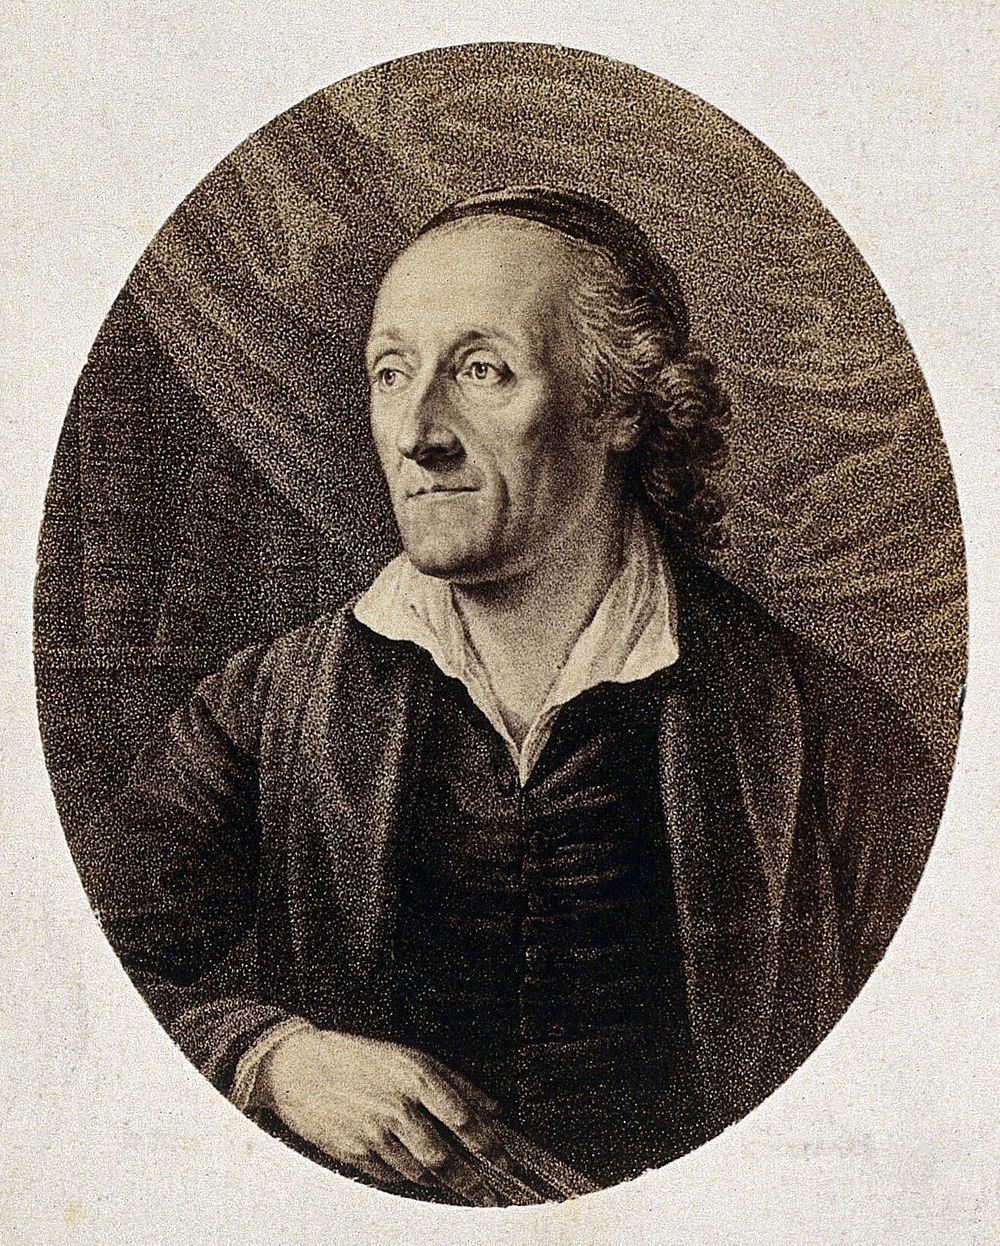 Johann Caspar Lavater. Photograph by Gustav Schauer after an engraving.